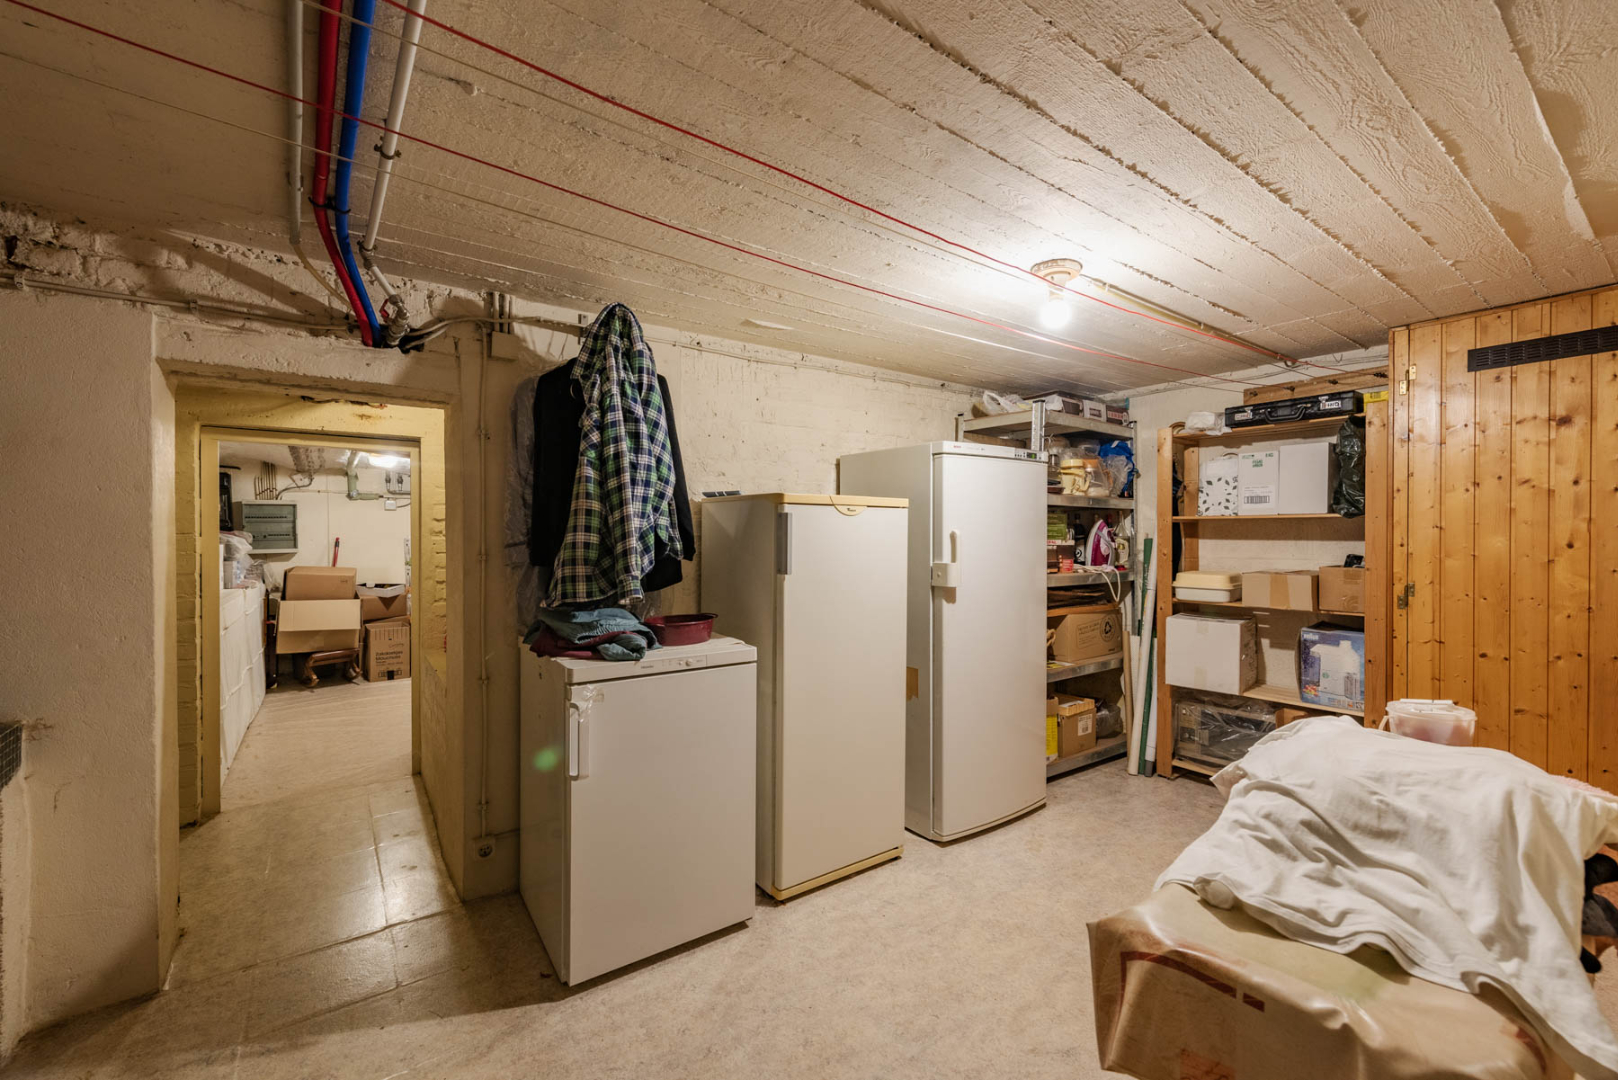 WONING met 4 kamers + garage/atelier 1640 SINT-GENESIUS-RODE 